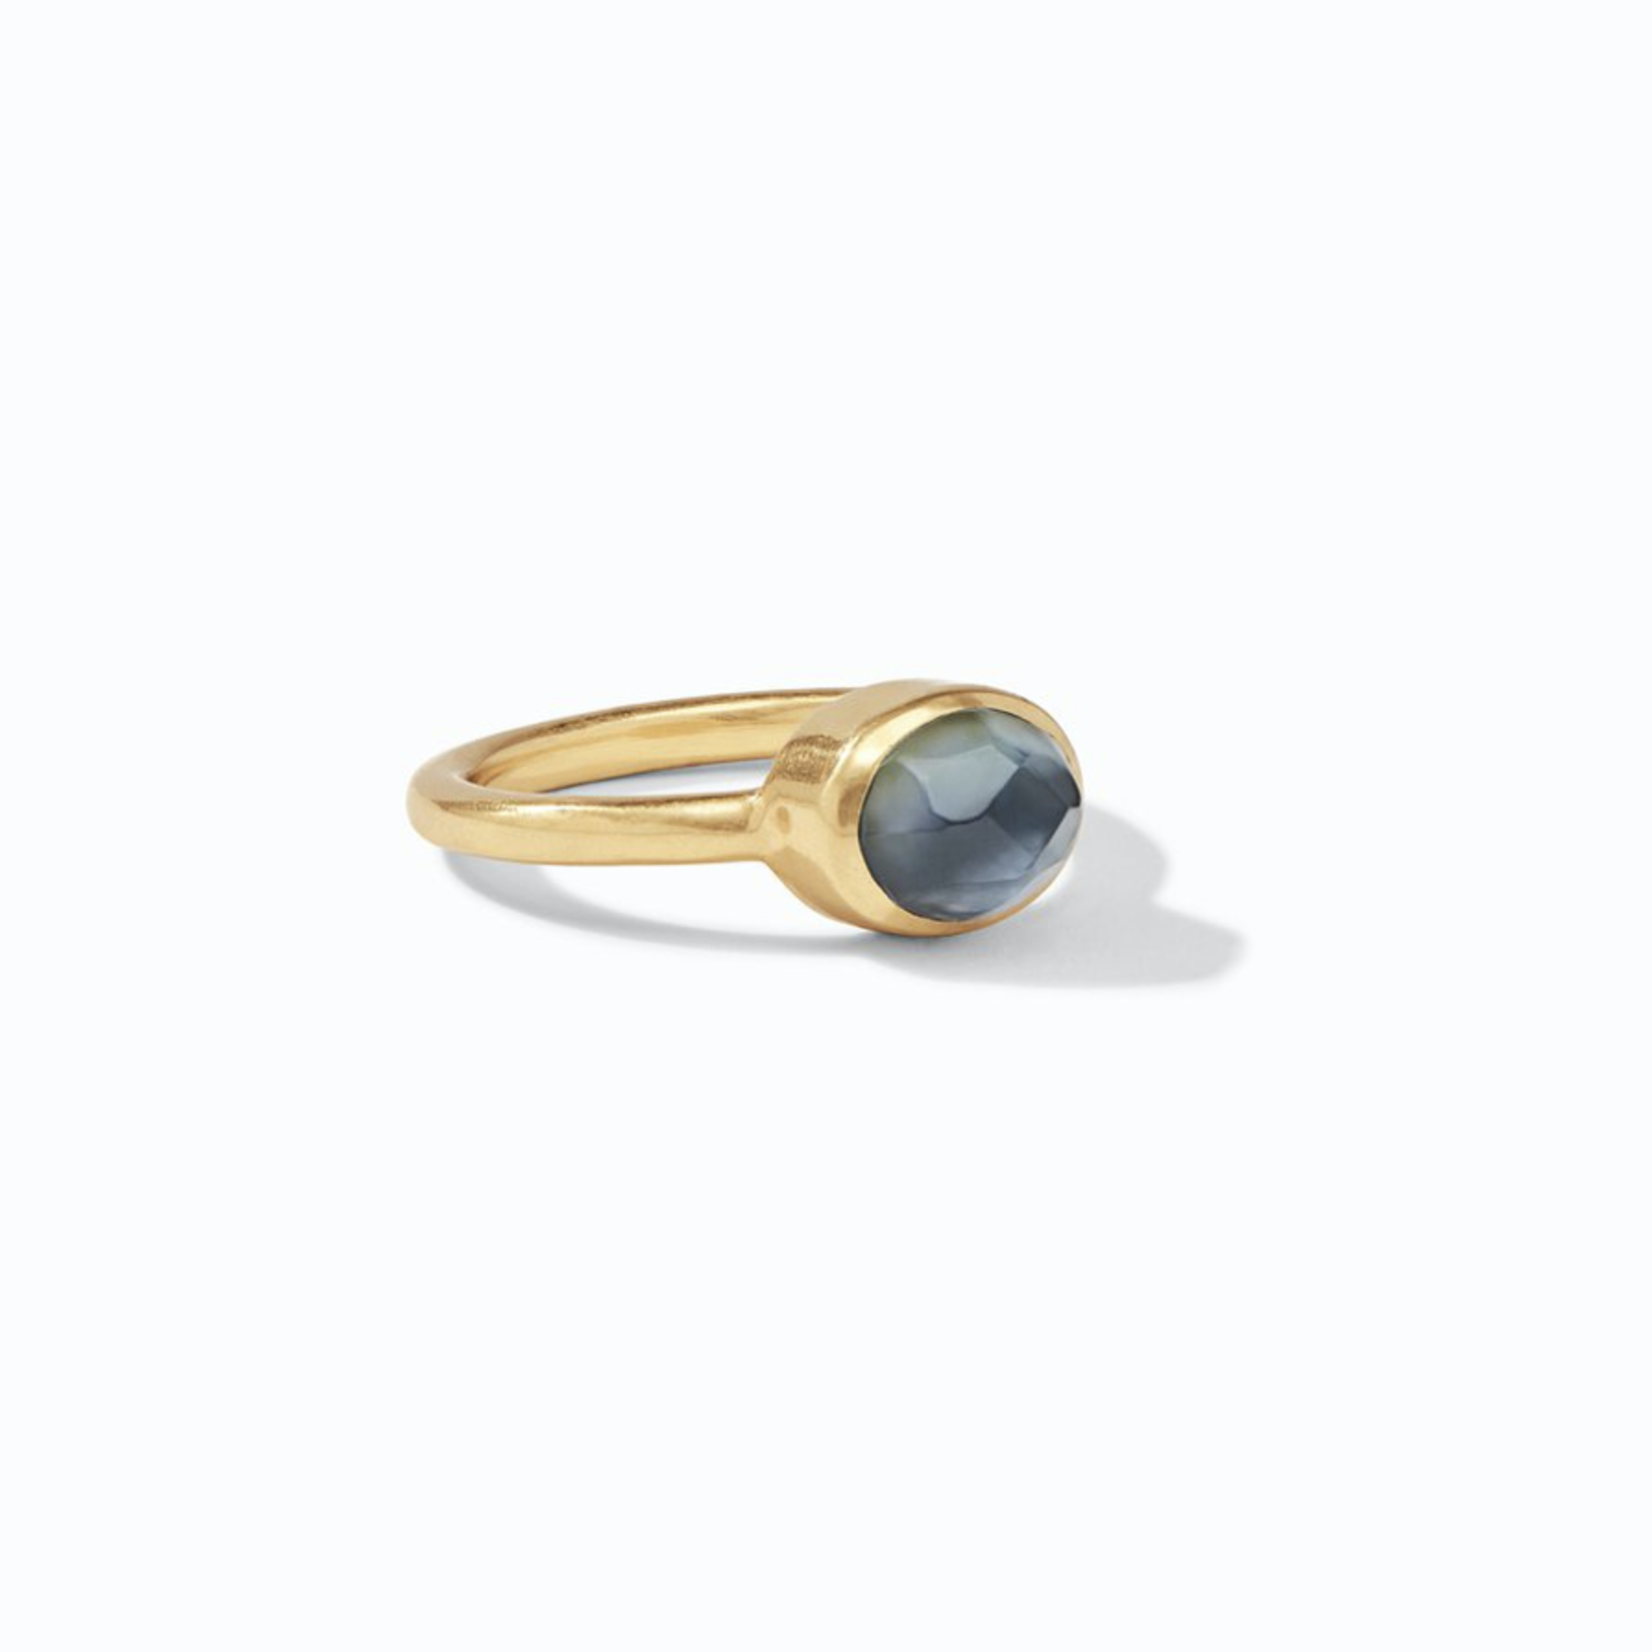 JULIE VOS Jewel Stack Ring - Iridescent Slate Blue- Size 8